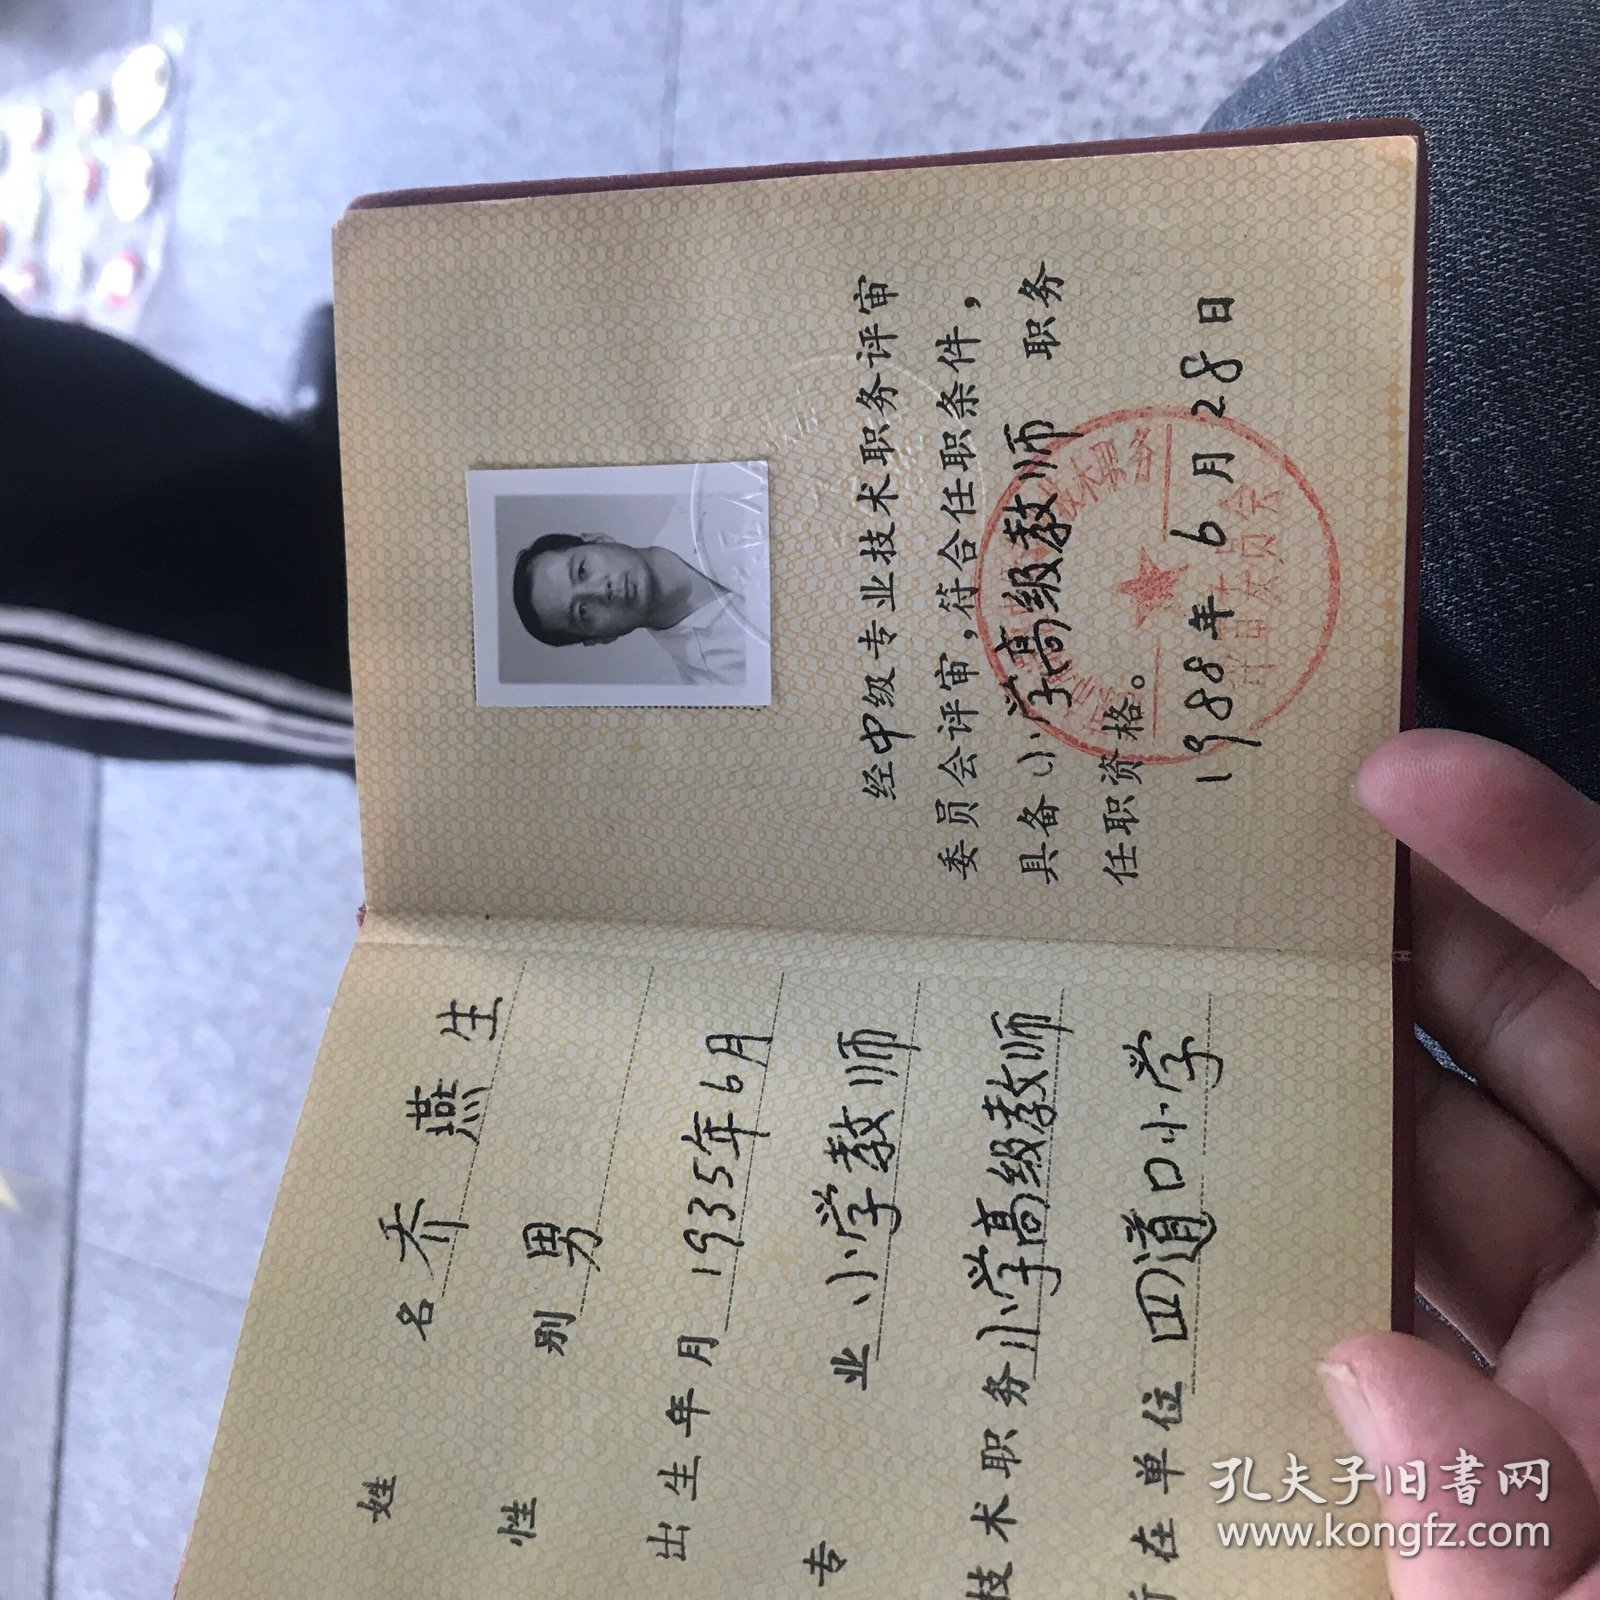 北京市专业职务证书